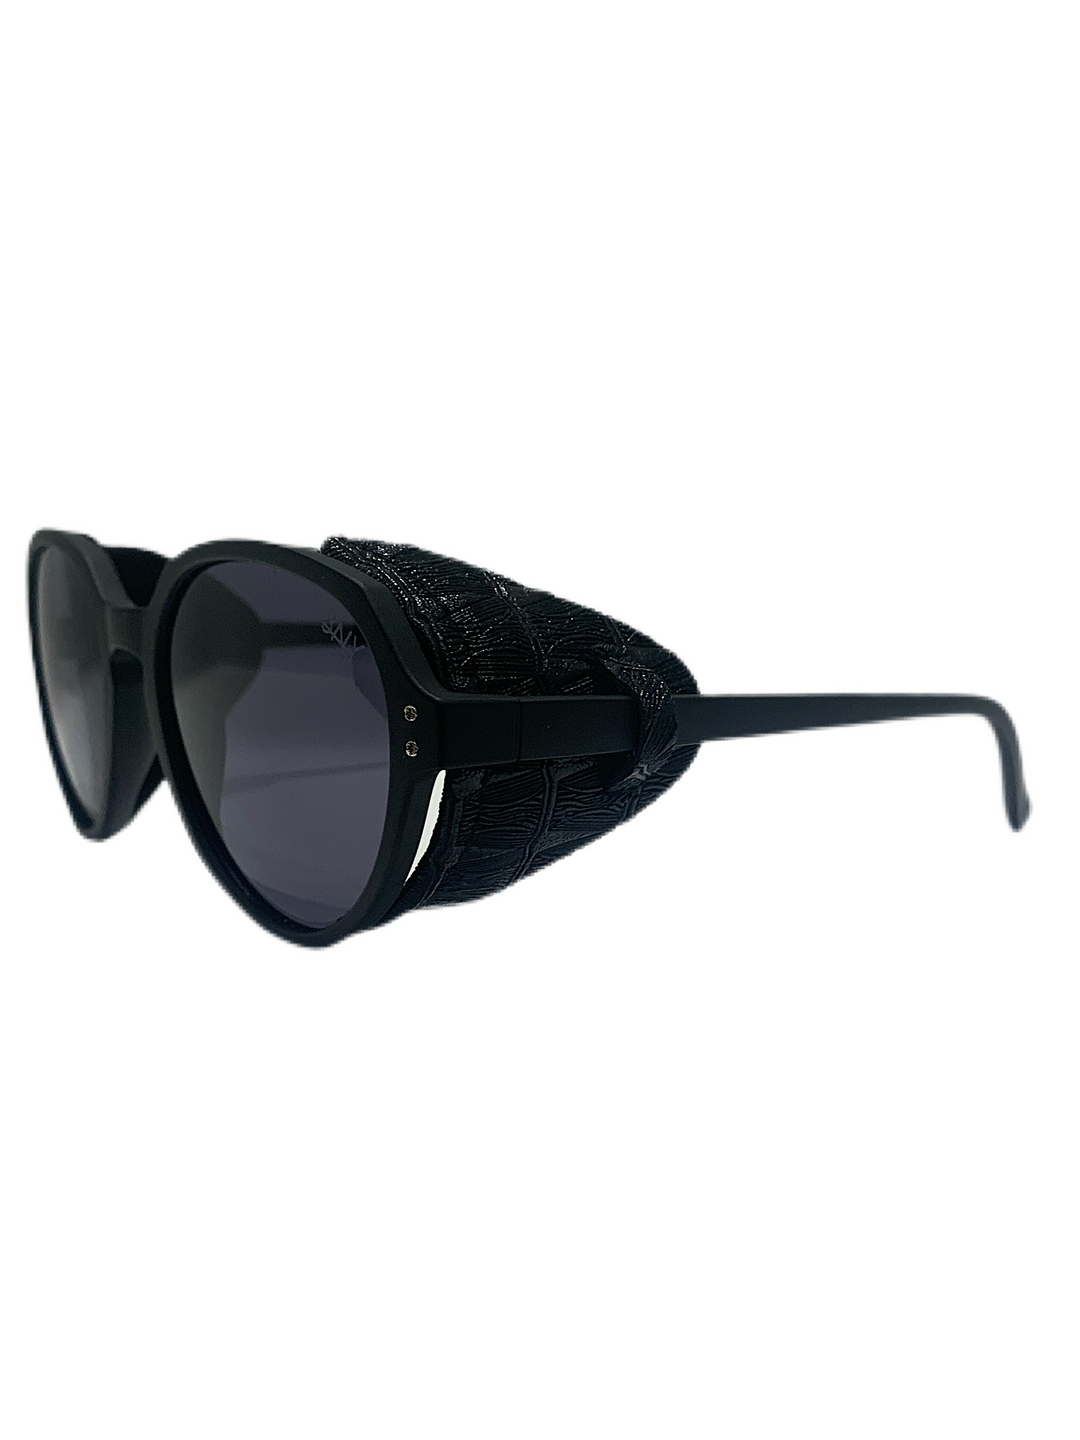 3NY - LANDARD 2.5 Sunglasses